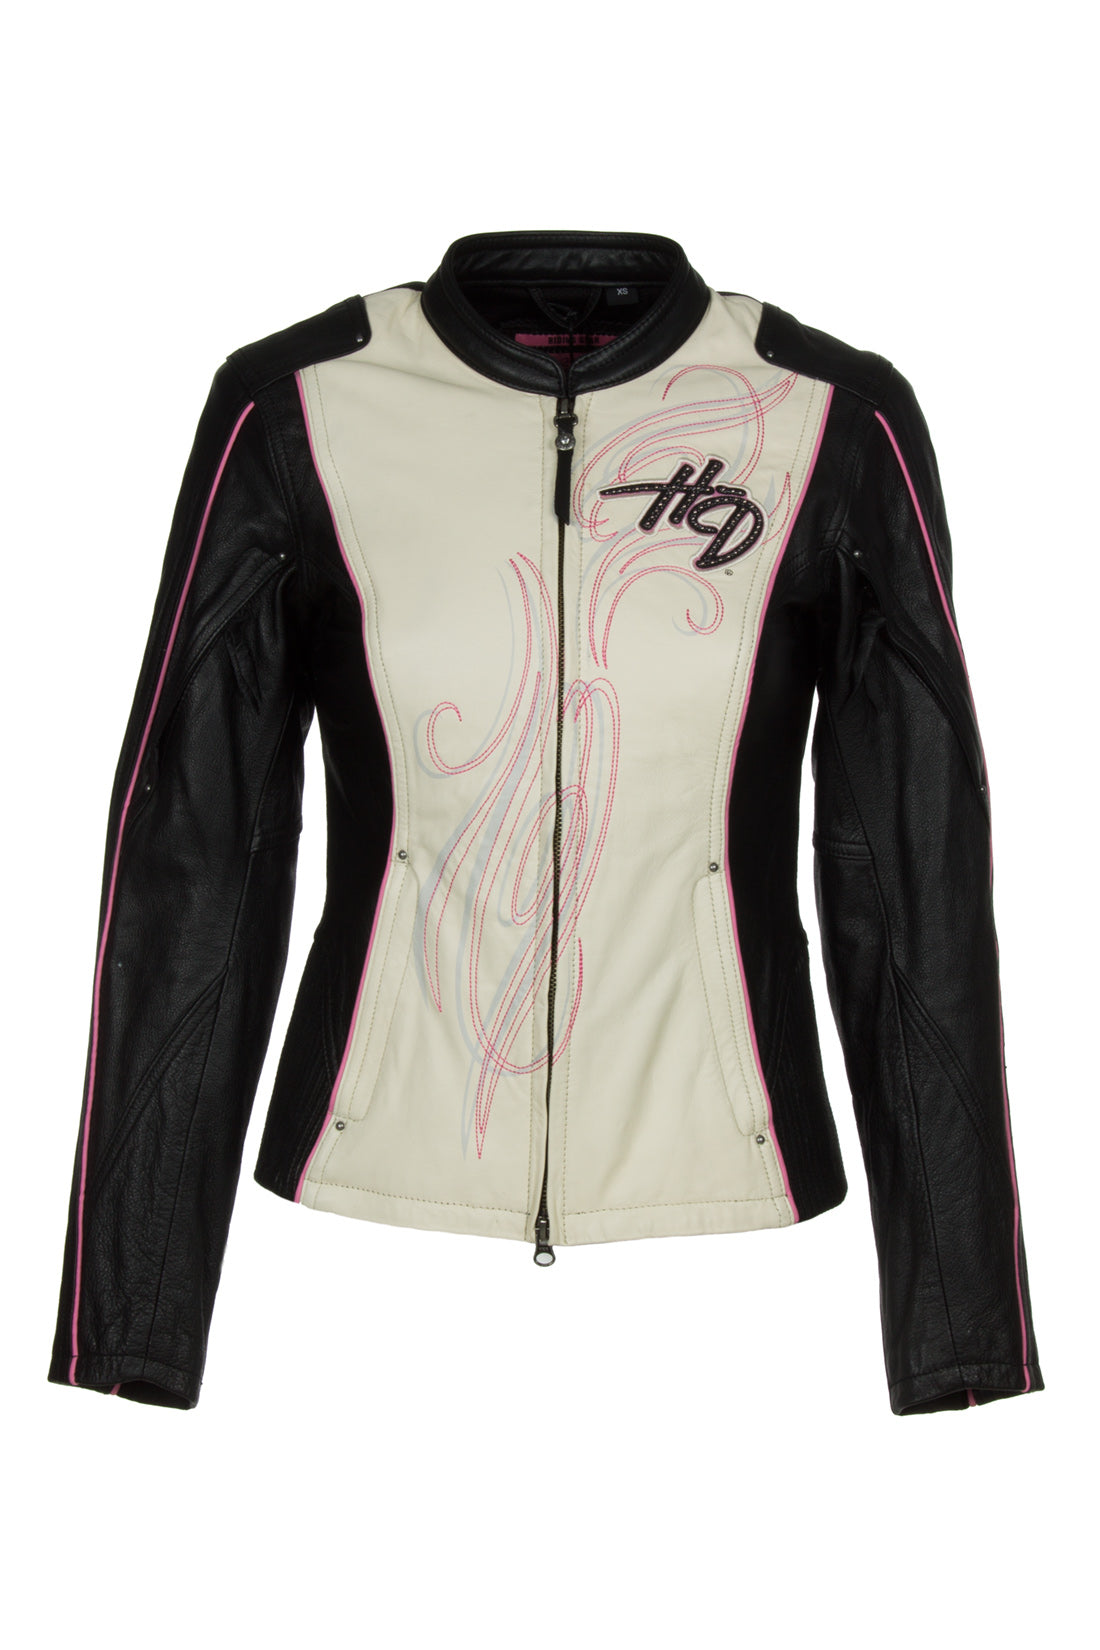 Harley-Davidson 97010-14VW Womens Pink Label Colorblocked Black Leather Jacket